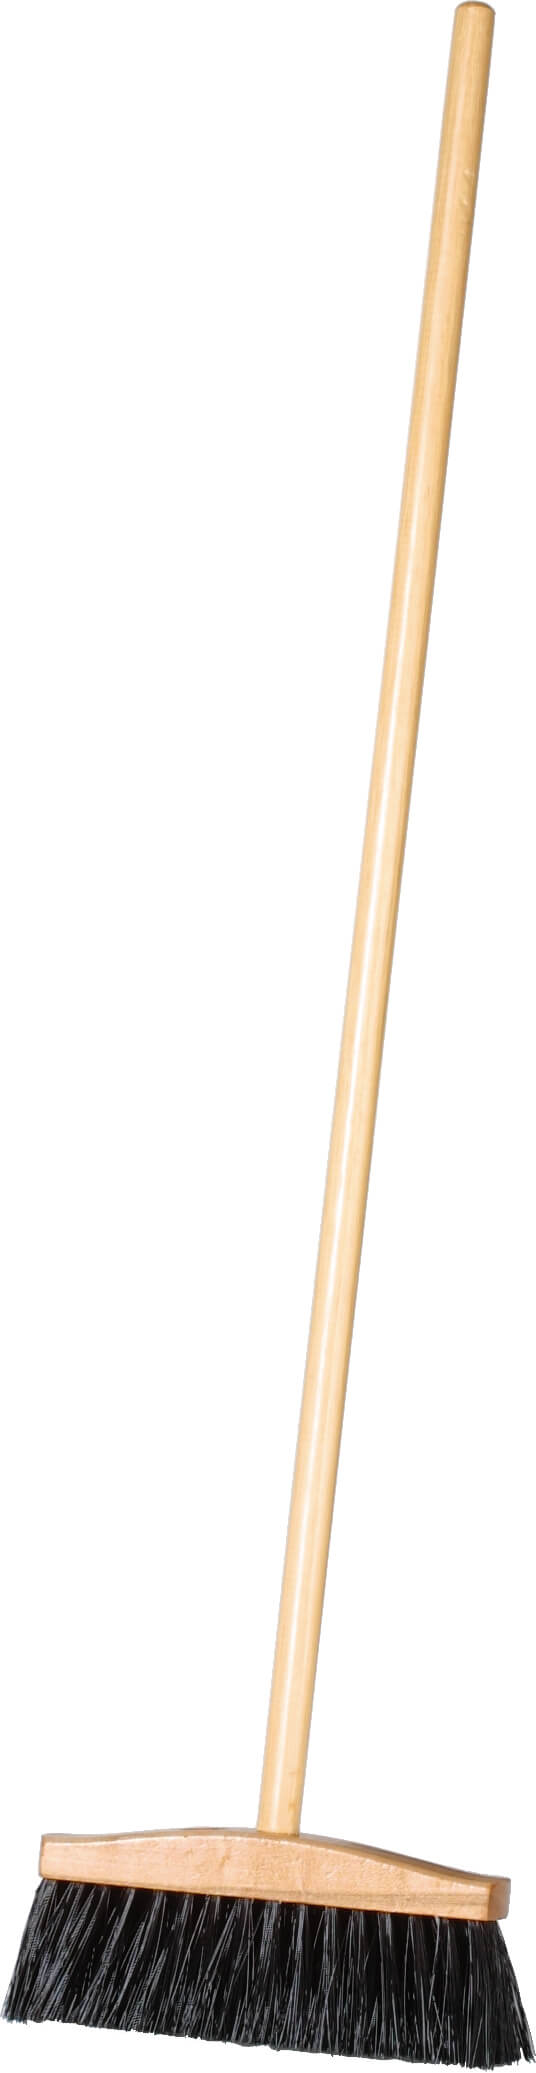 Dust-pan-broom - wood